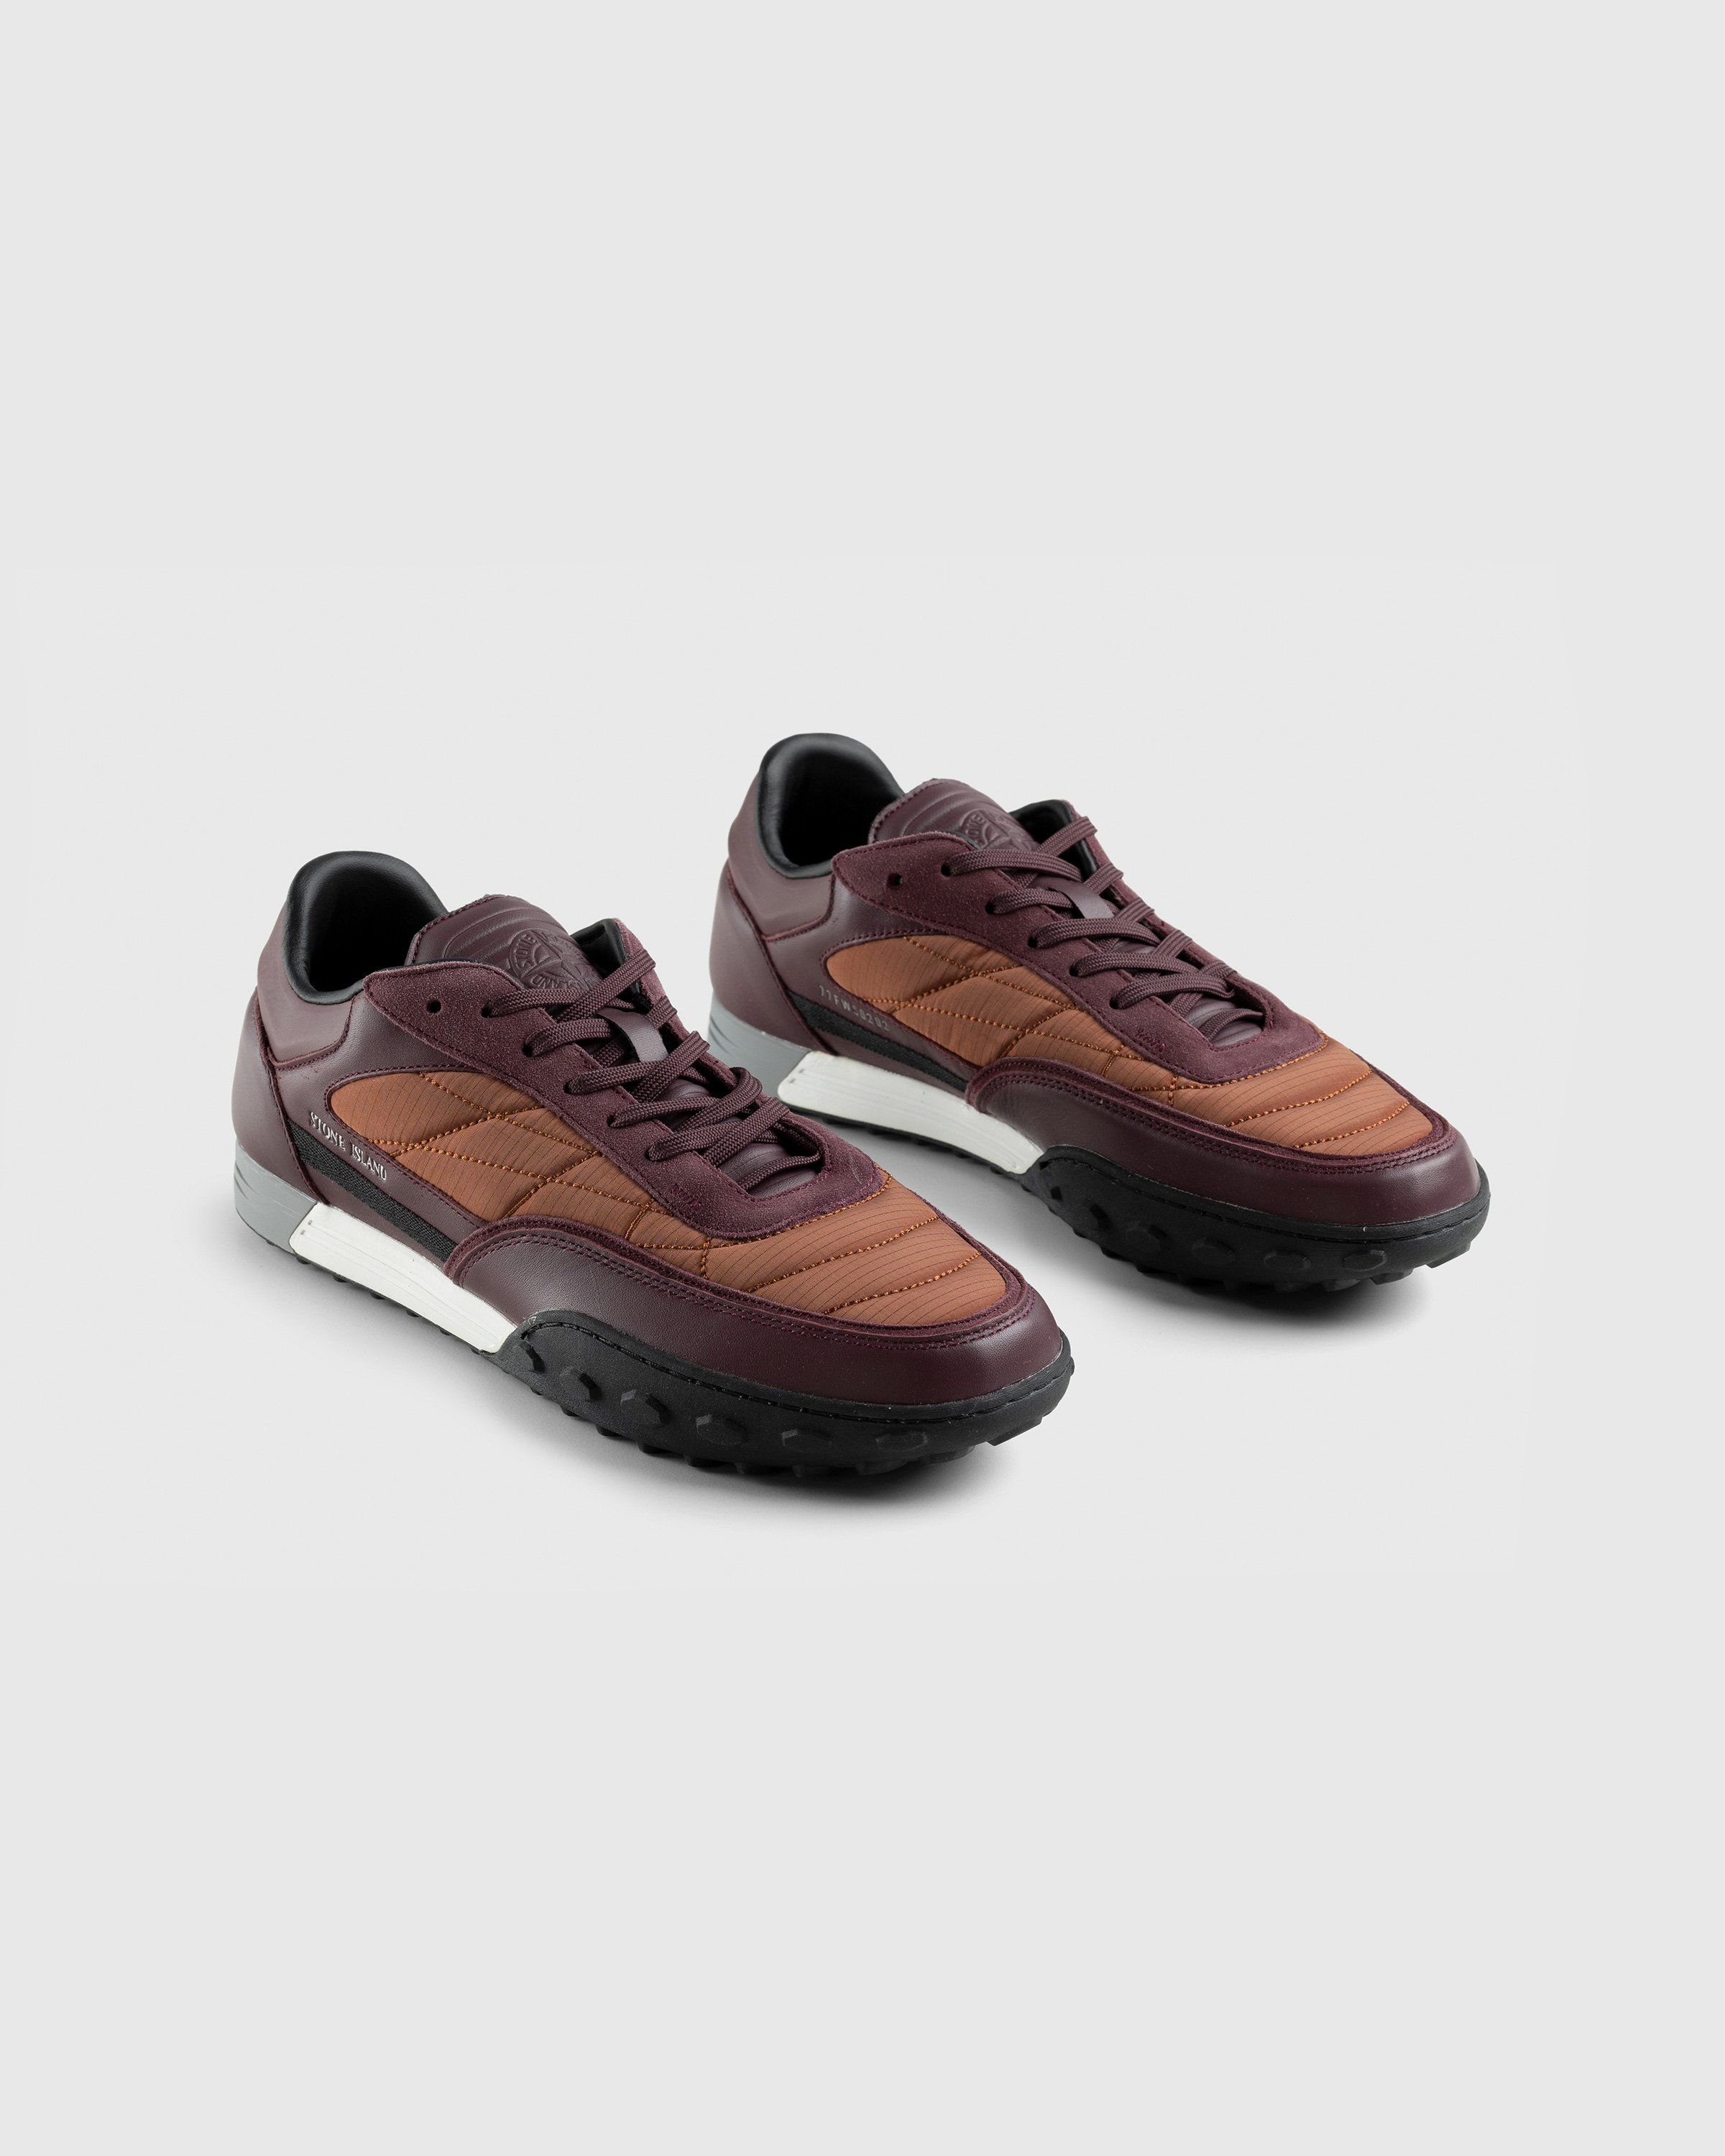 Stone Island - Football Sneaker Burgundy - Footwear - Red - Image 3